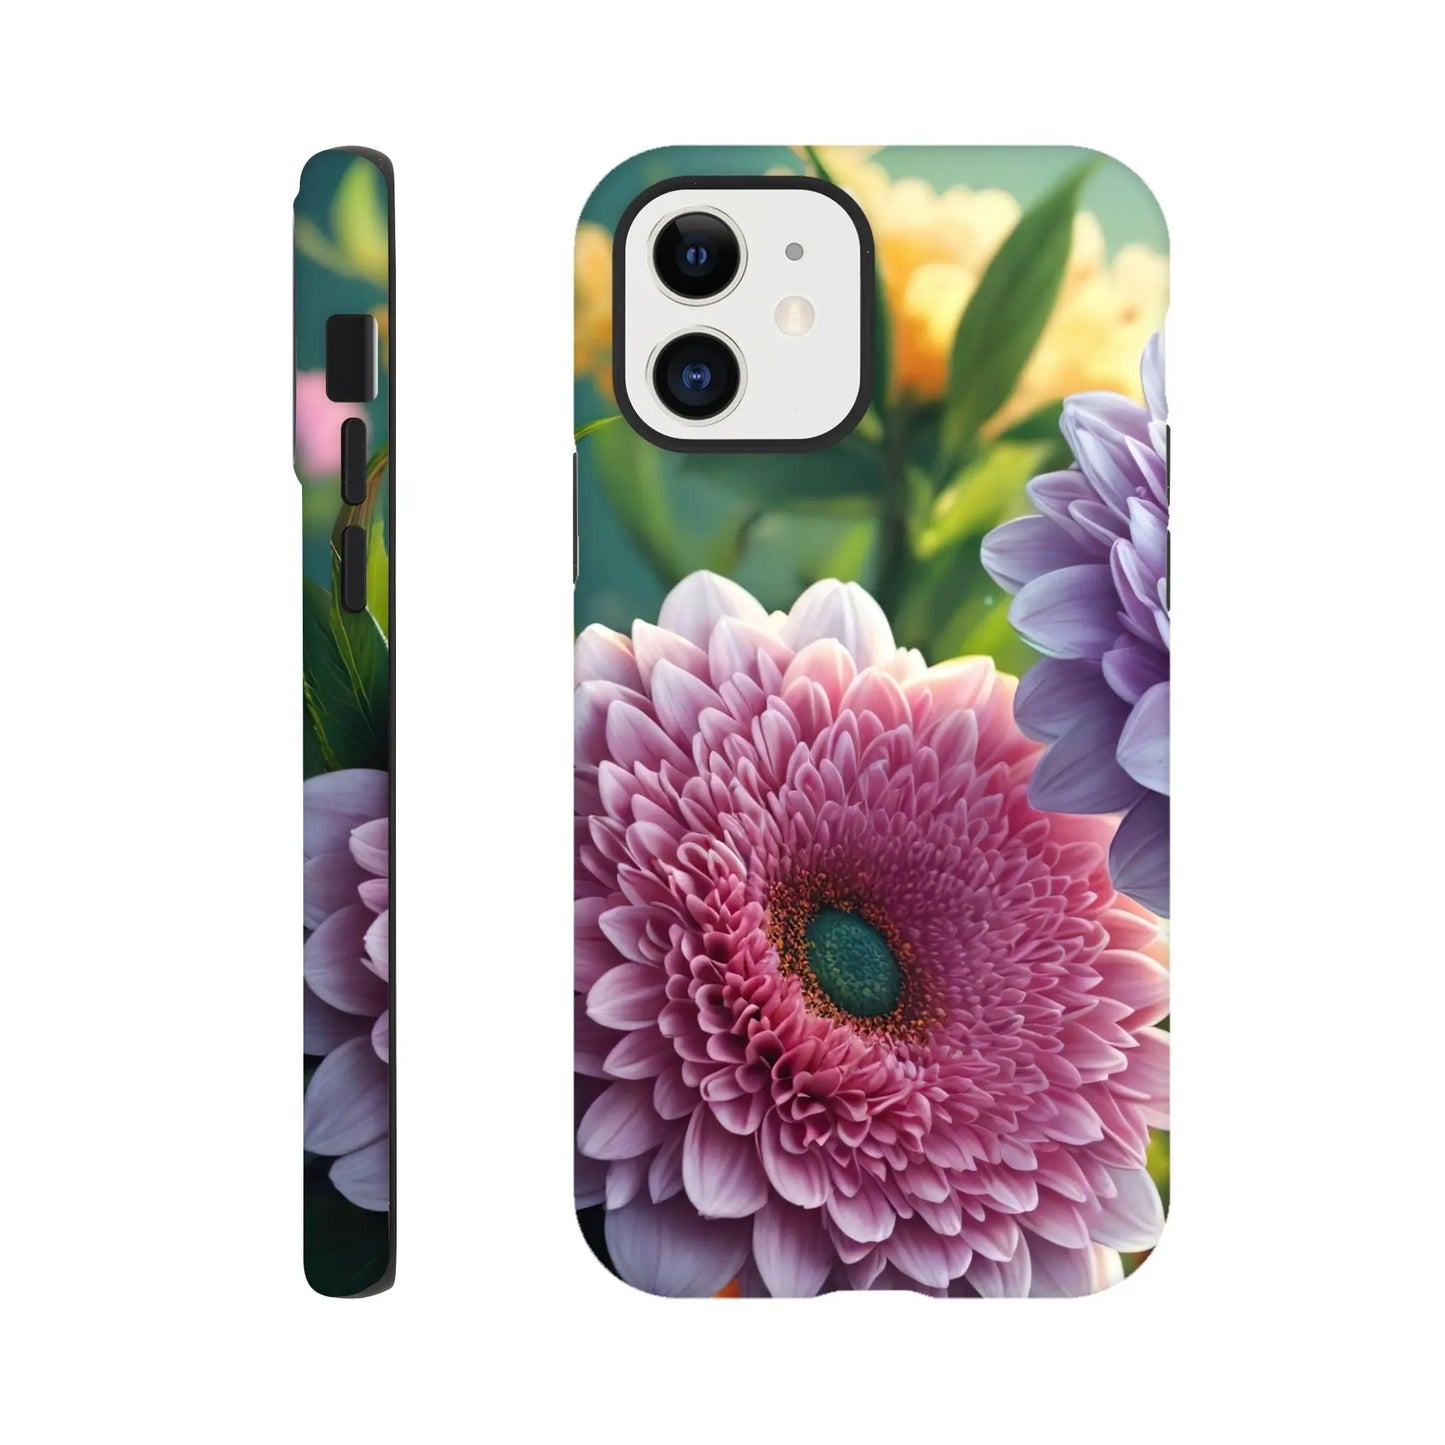 Smartphone-Hülle "Hart" - Blumen Vielfalt - Foto Stil, KI-Kunst, Pflanzen, iPhone-12 - RolConArt